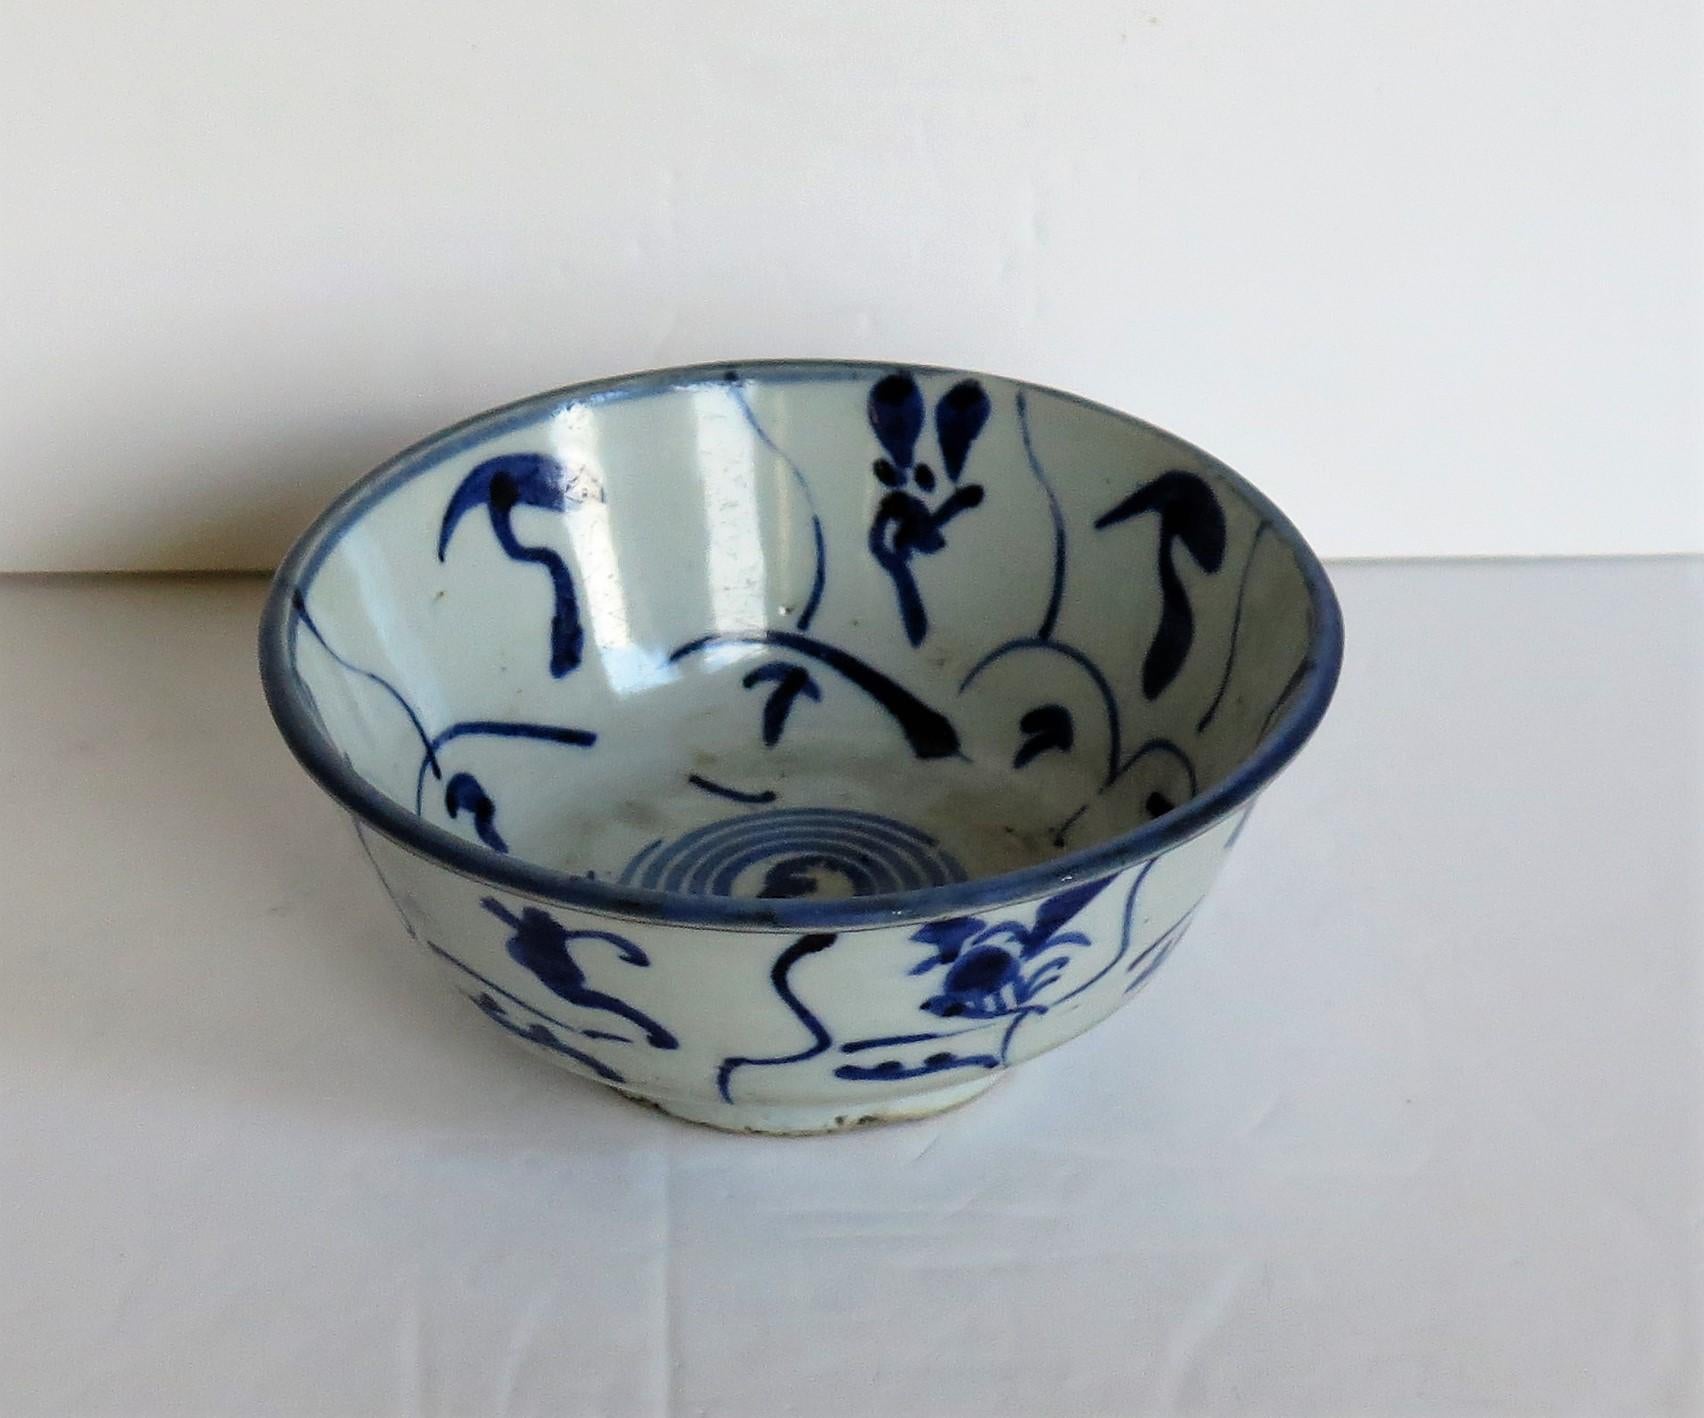 Il s'agit d'un bol en porcelaine d'exportation chinoise peint à la main, que nous datons du 17ème siècle, dynastie Ming. 

La coupe est en pot assez épais, avec un pied assez haut, légèrement en retrait, et un bord éversé.

La coupe est décorée